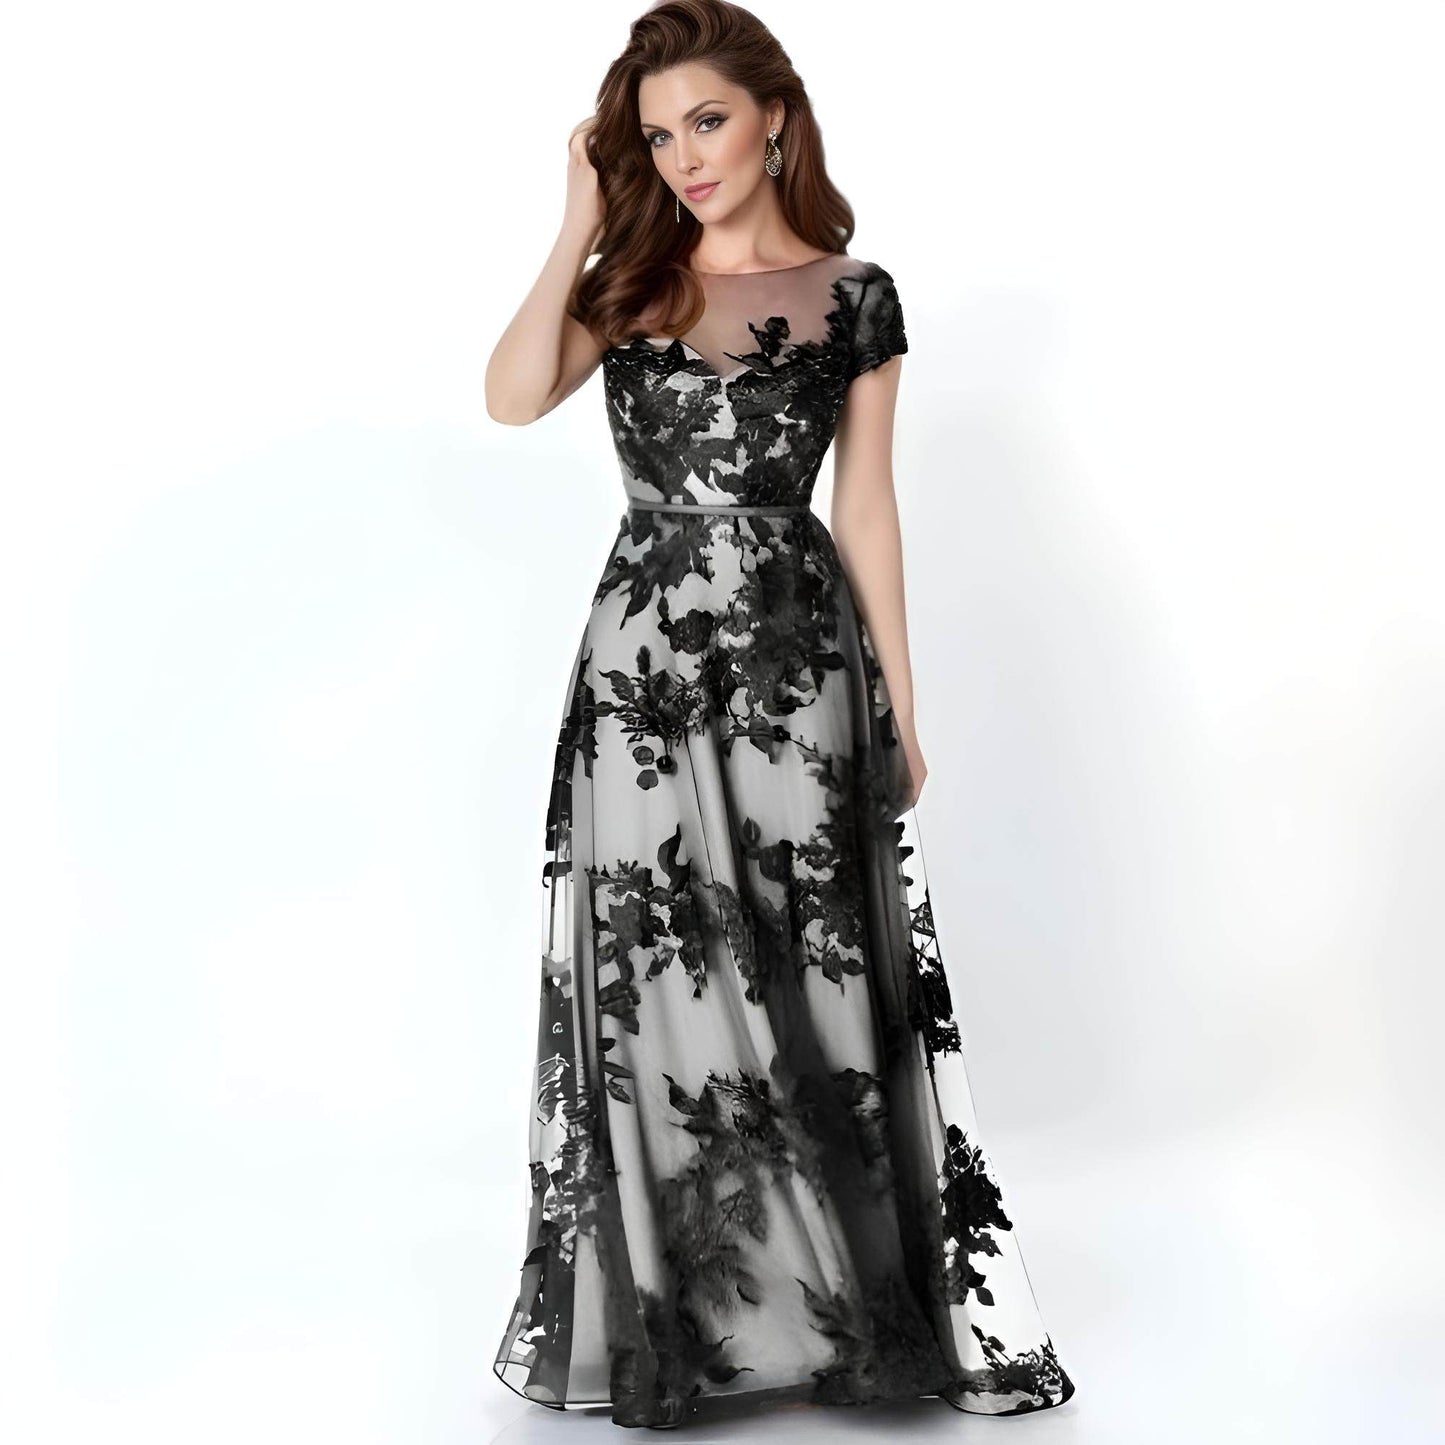 ESTELLE Formal Couture Dress